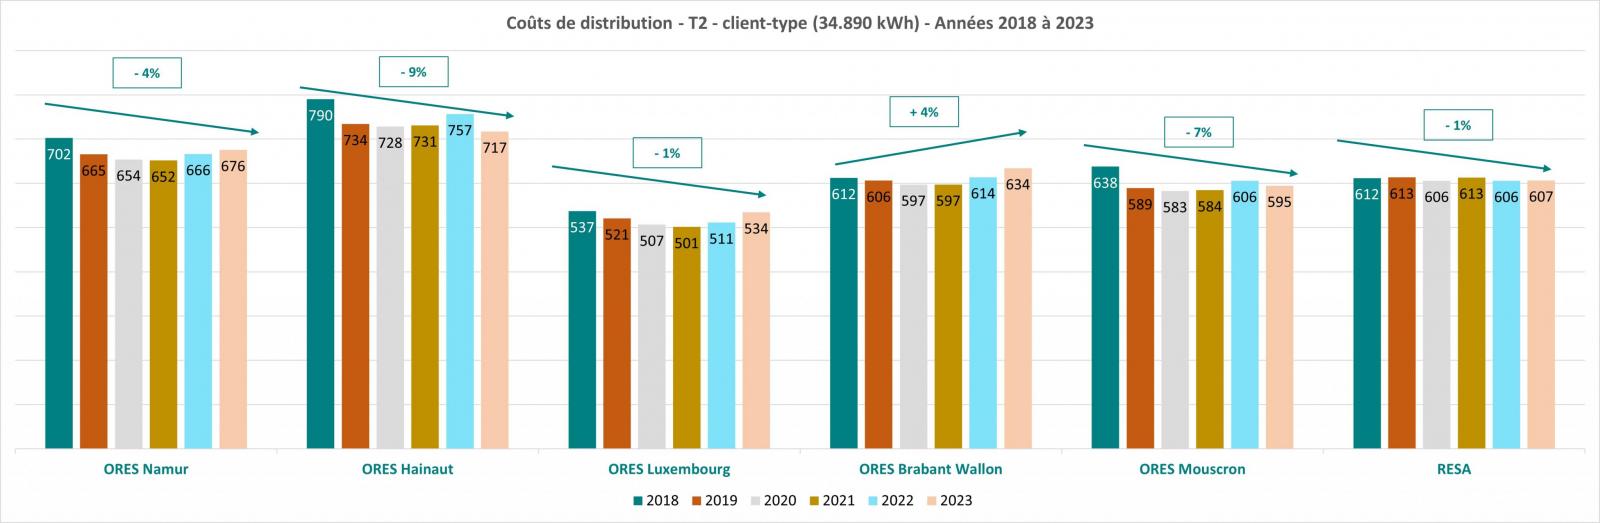 Evolution des coûts de prélèvement de gaz des années 2018 à 2023 - Client-type T2 - Histogramme par GRD